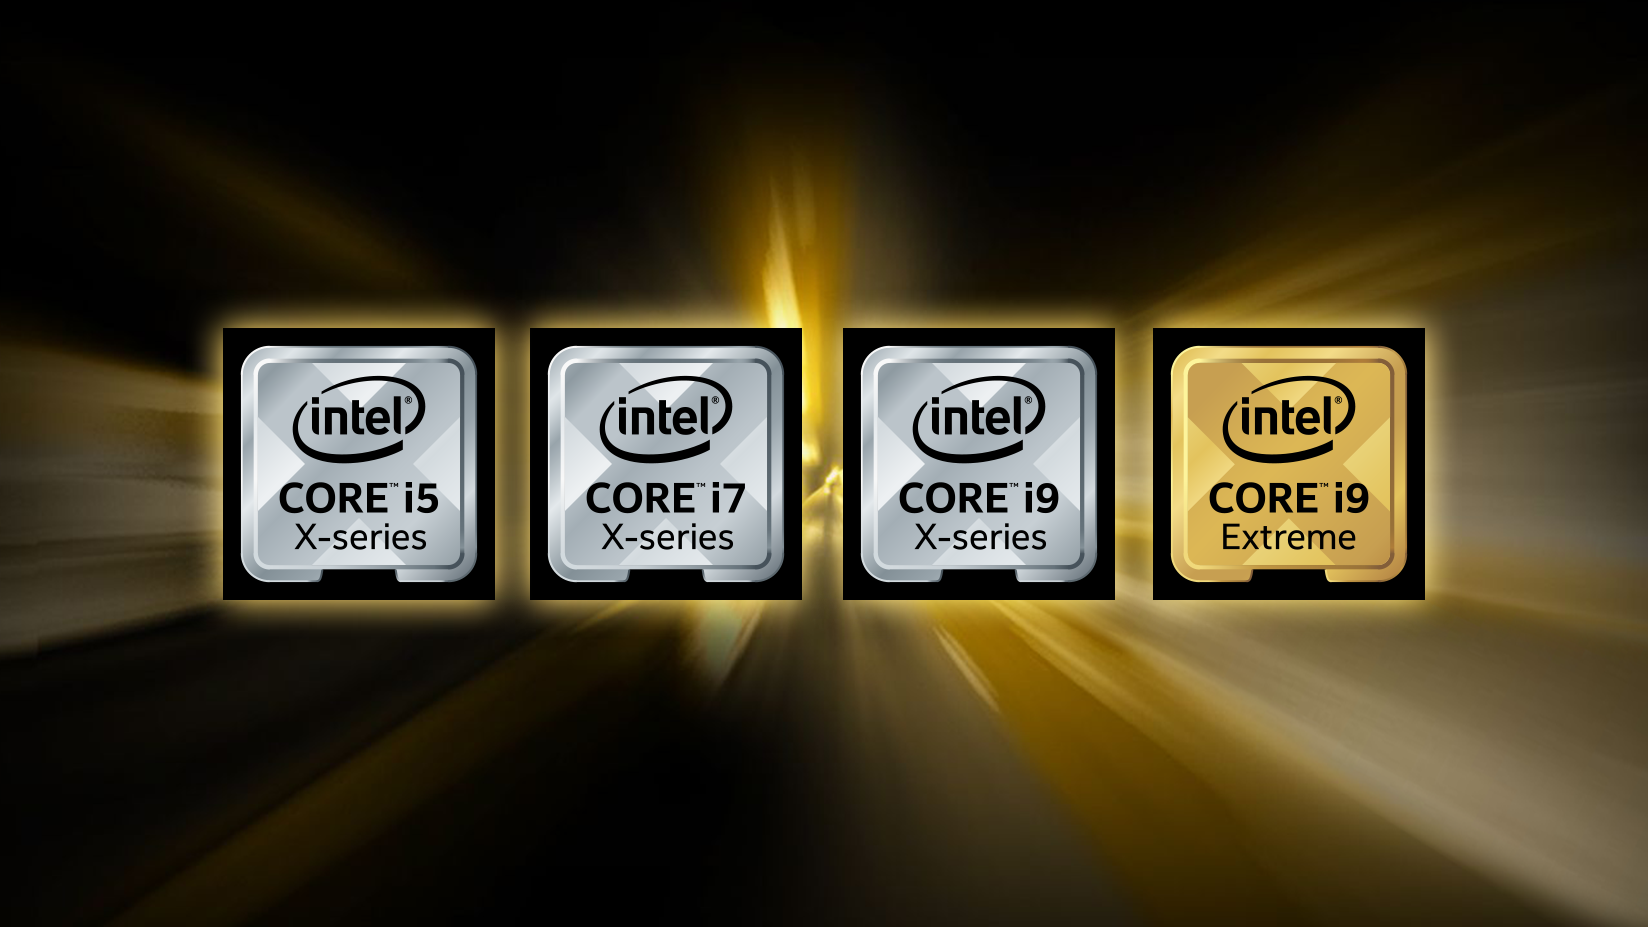 Đây là những gì hiện tại chúng ta biết được về Intel Core i7-9700K